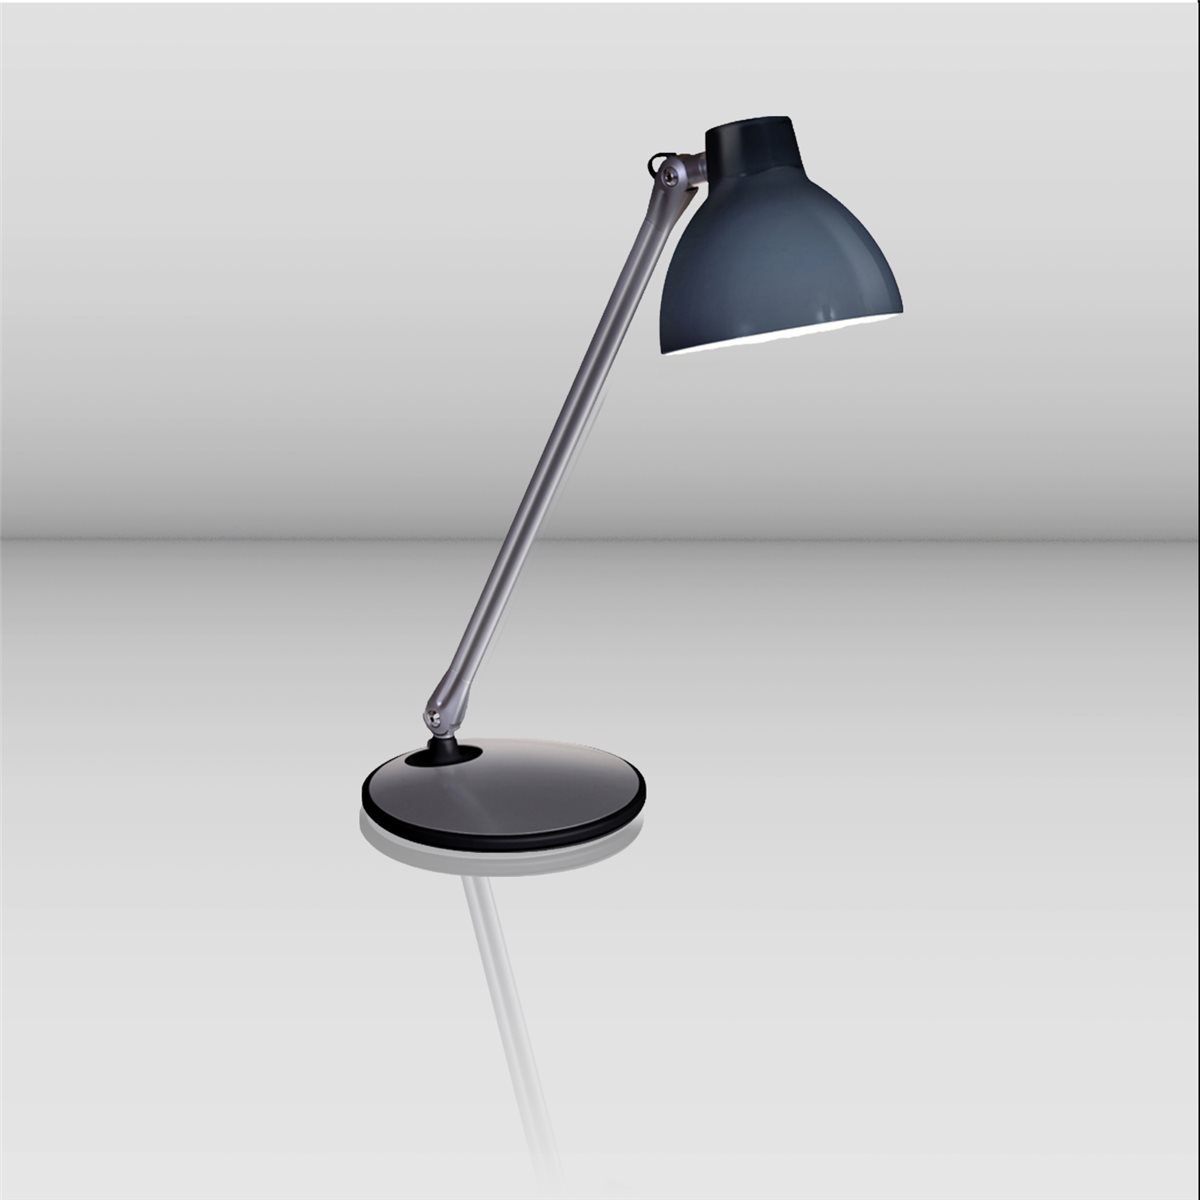 Lampenlux LED Tischlampe Selene schwenkbar drehbar Bürolampe mit Schalter schwarz E27 4W